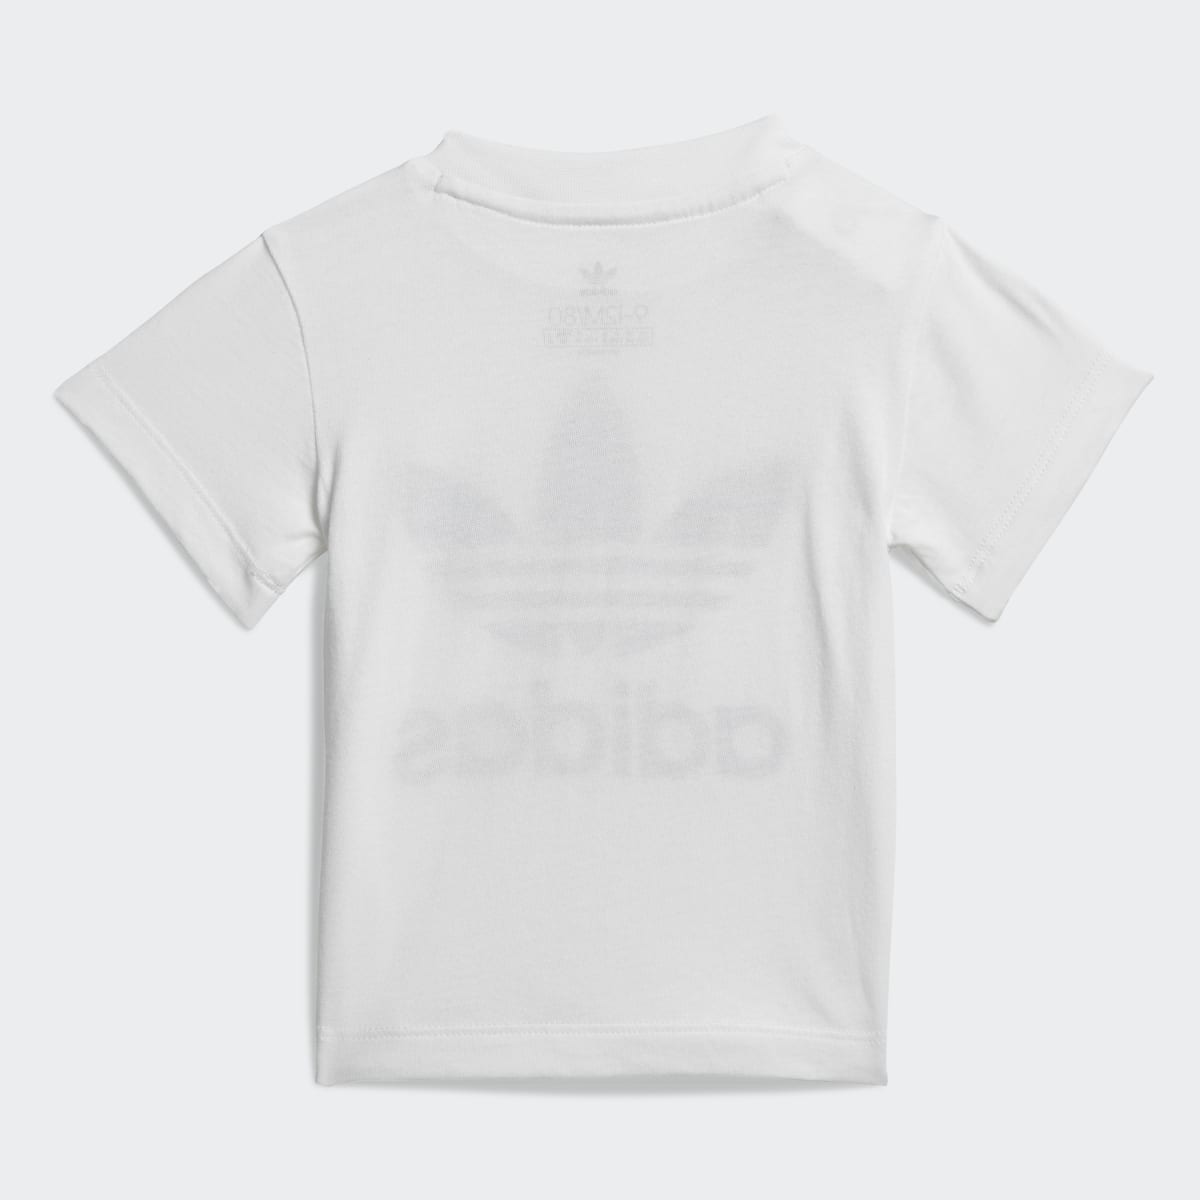 Adidas Trefoil Şort ve Tişört Takımı. 4